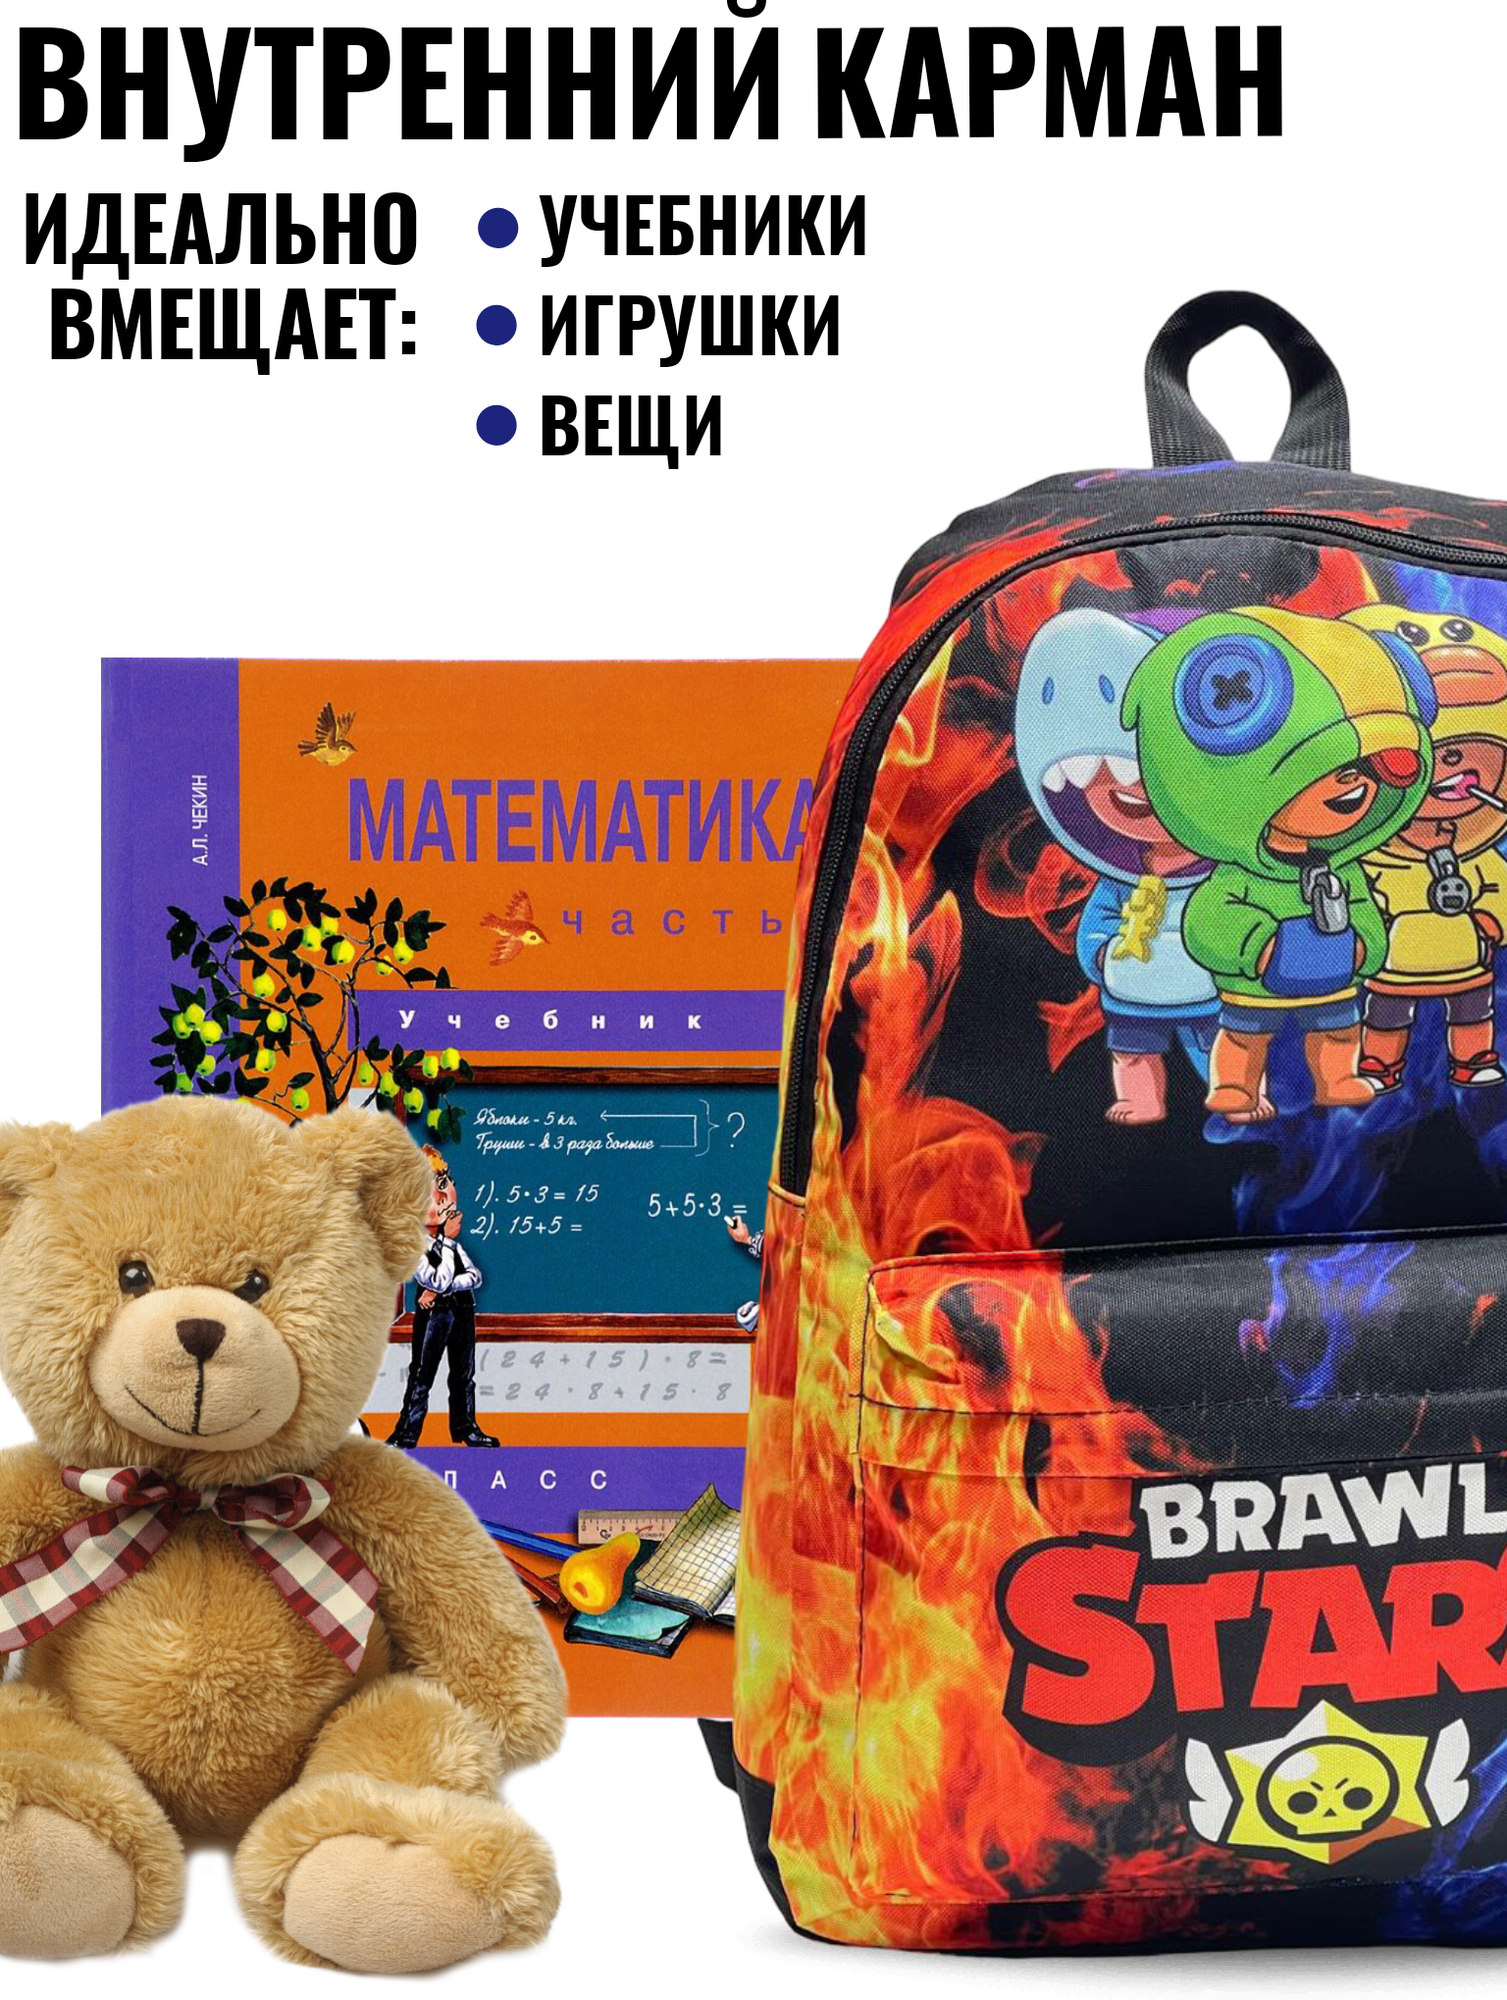 Рюкзак для детей Brawl Stars